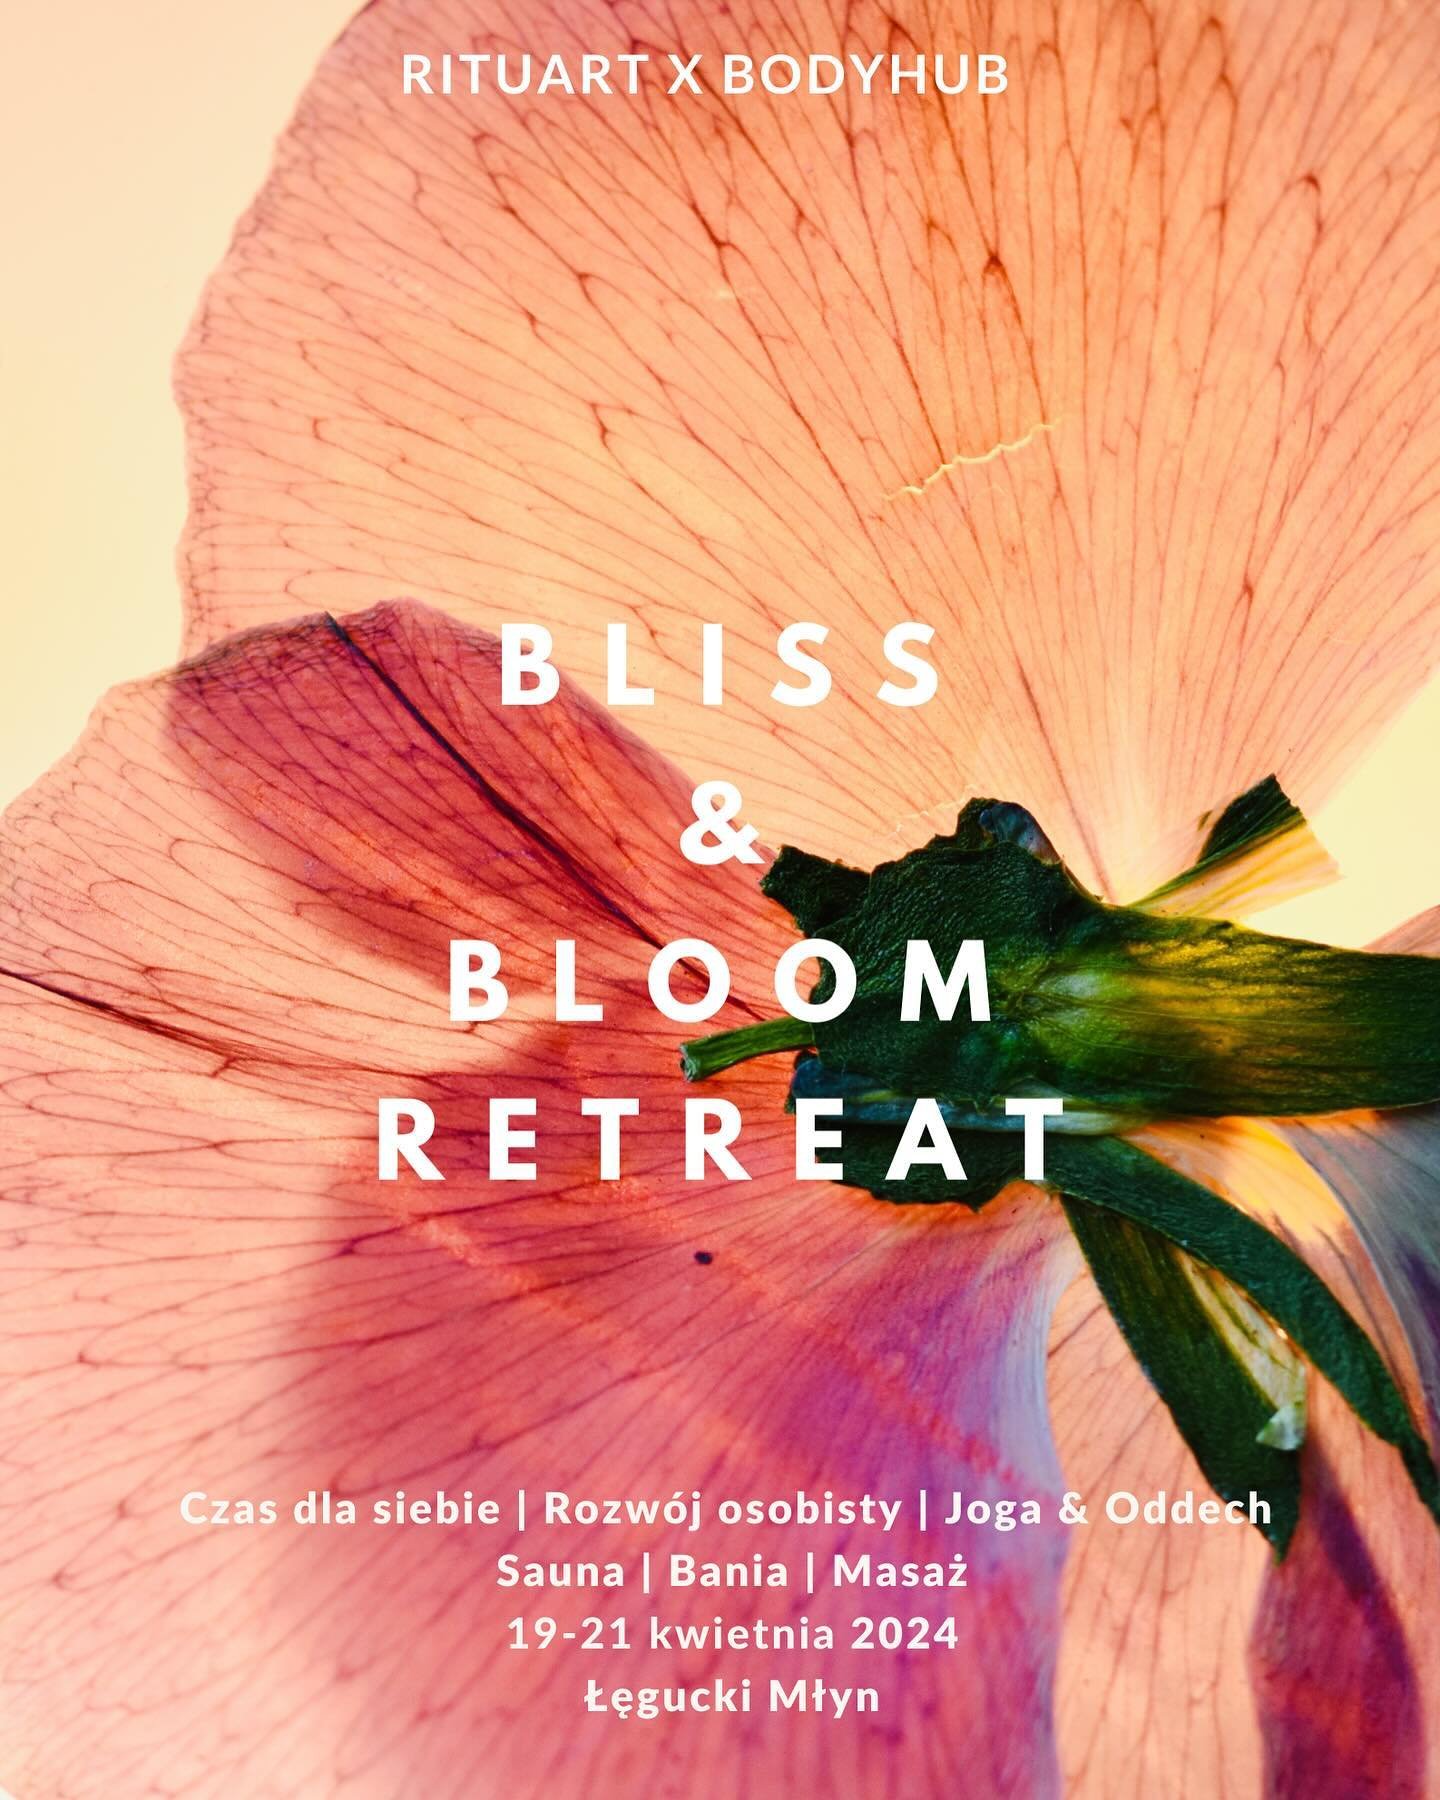 19-21 kwietnia 2024 🌷 Bliss &amp; Bloom Retreat | Łęgucki Młyn

Kochani, zapraszamy Was na wiosenną edycję naszego wyjazdu tworzoną przez @rituart_concept &amp; @bodyhubofficial w wyjątkowym miejscu na Mazurach w @leguckimlyn . Będzie to już 3 edycj